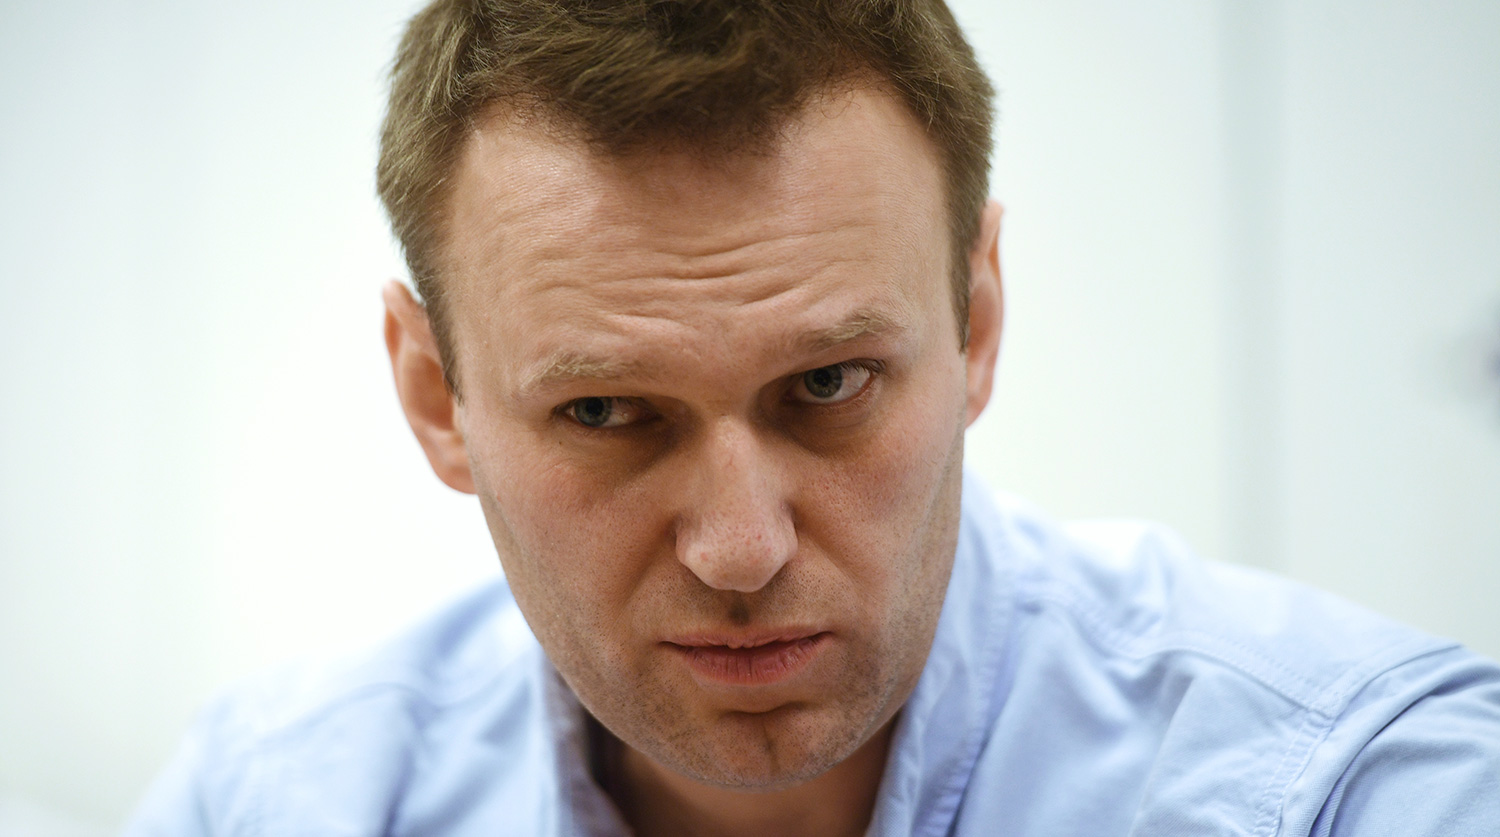 Врачи исключили у Навального инфаркт и инсульт